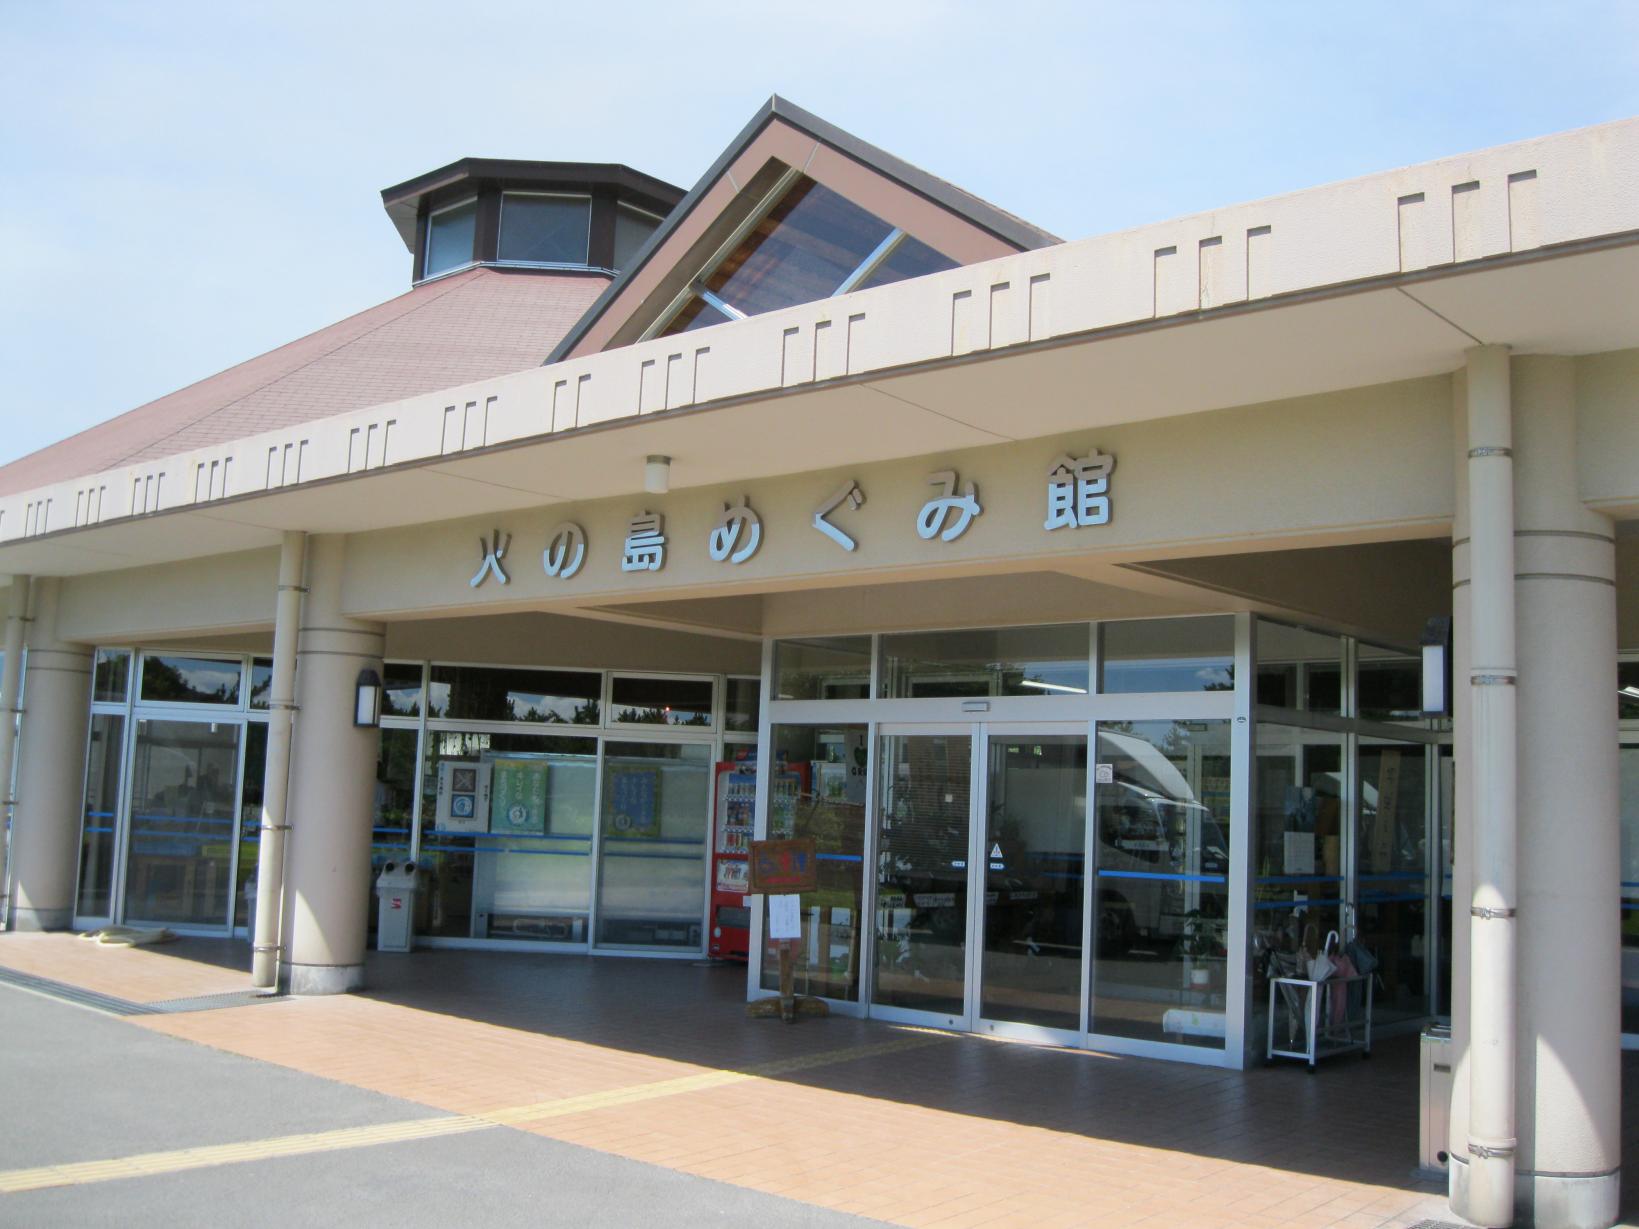  道路服務區 櫻島火之島特產館 